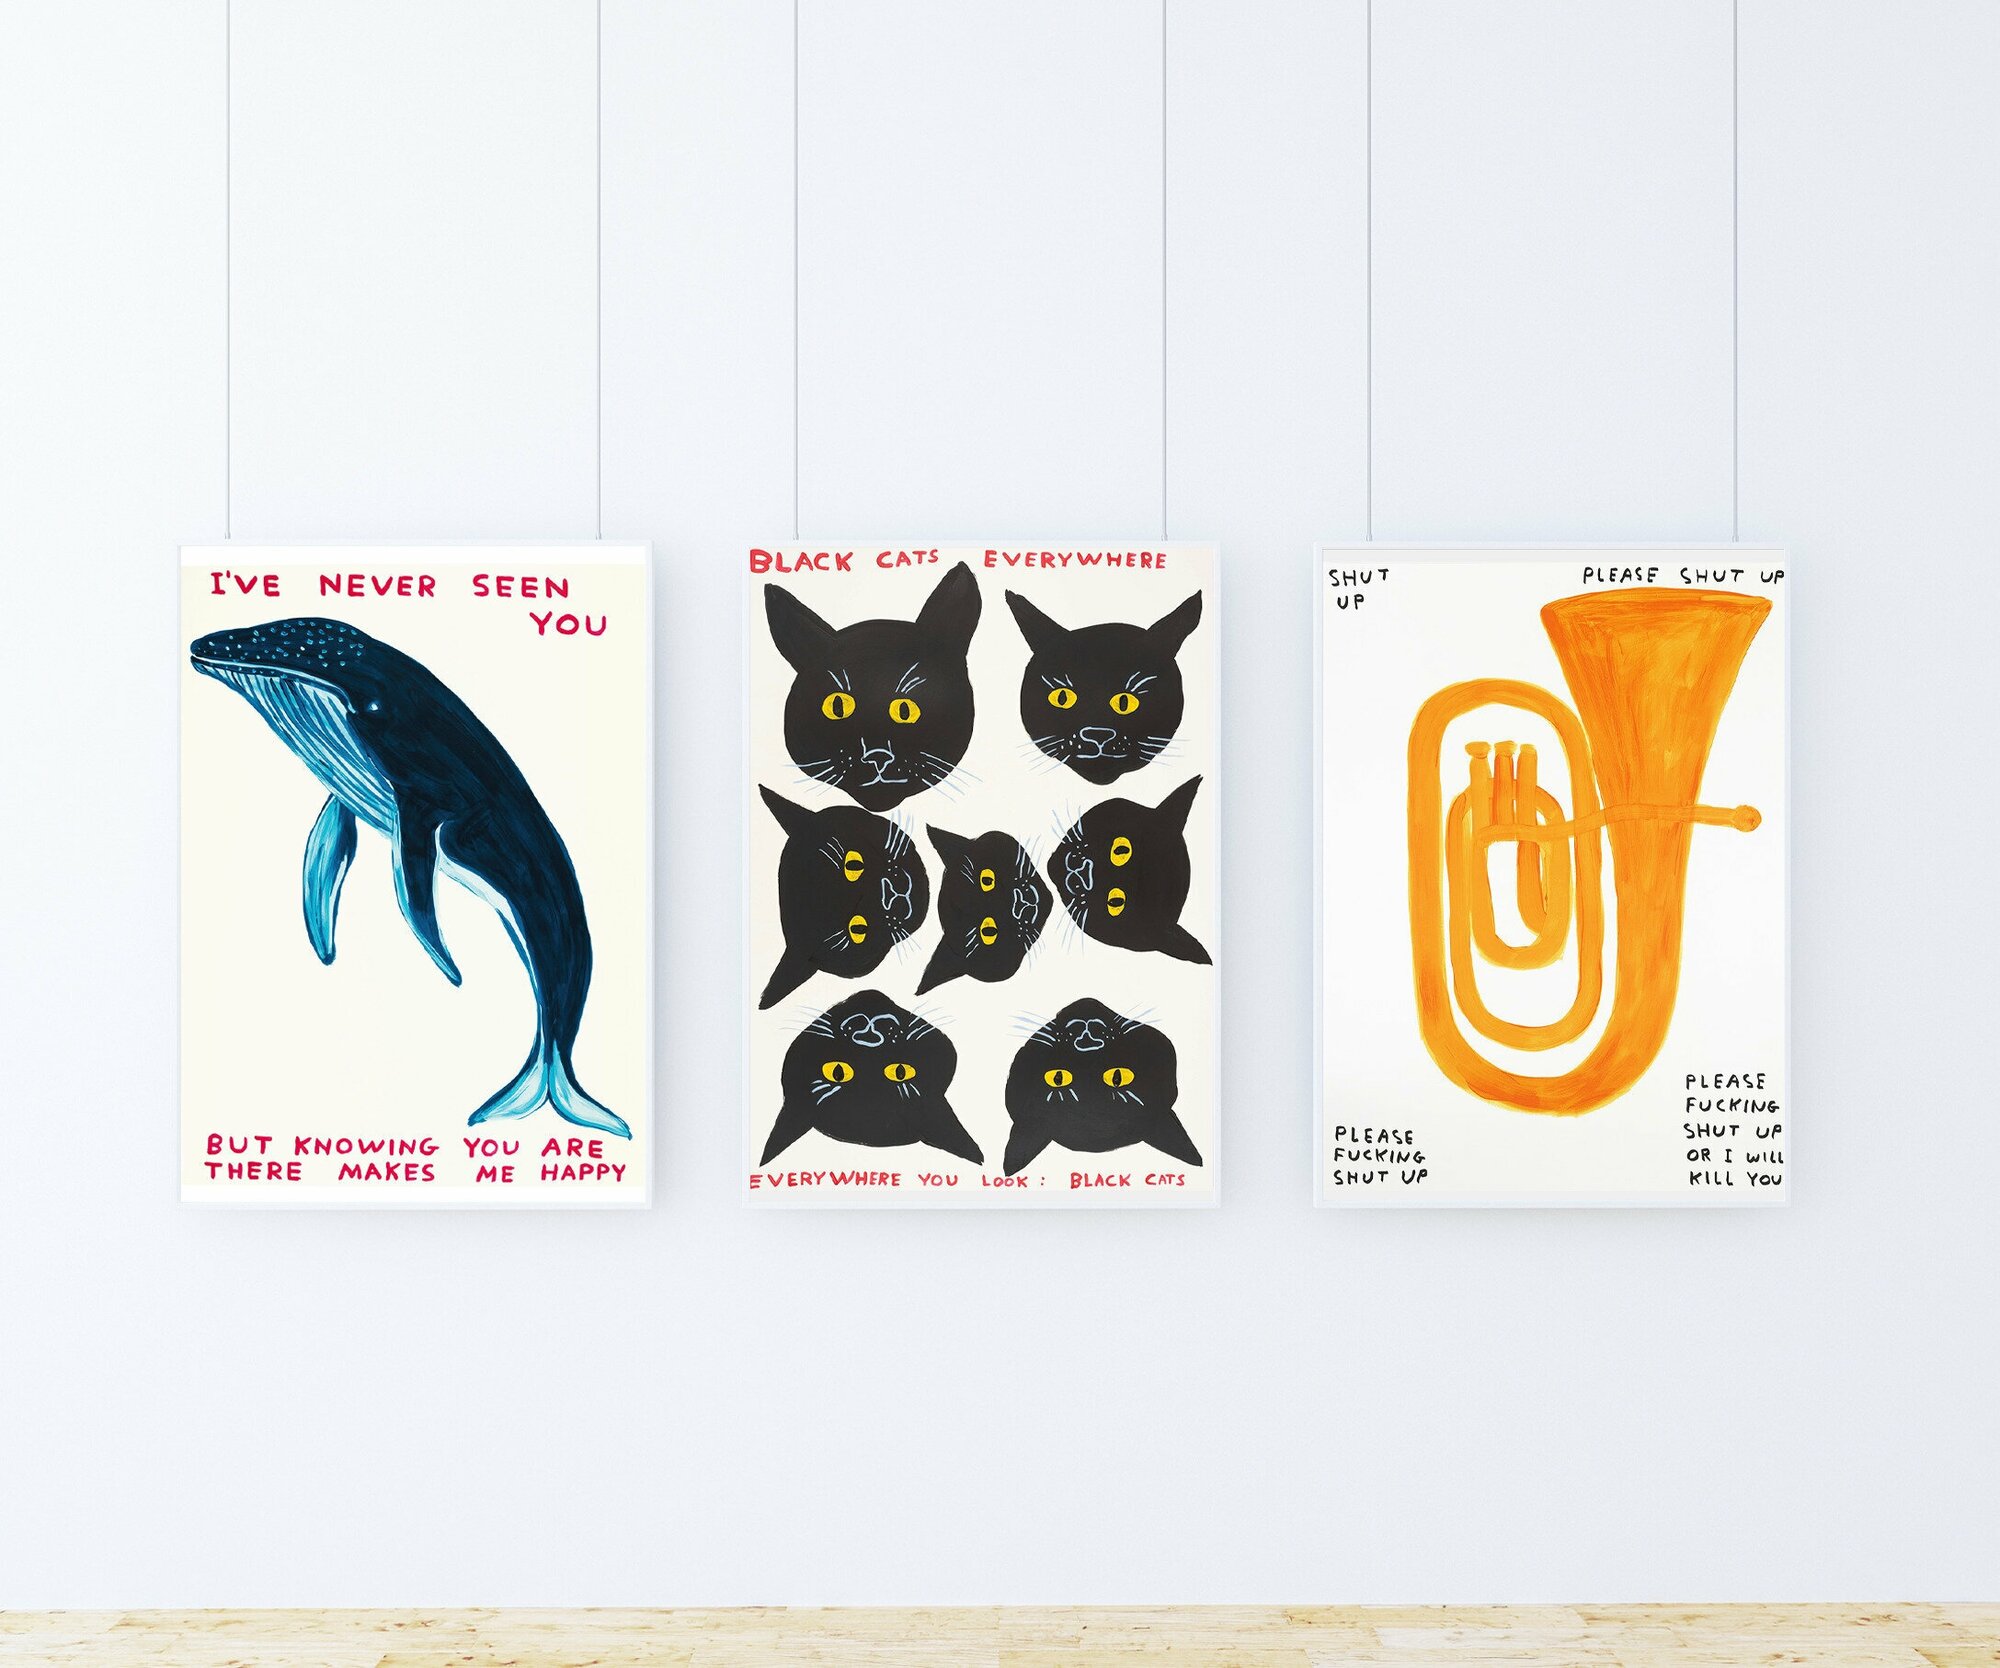 Набор плакатов "Дэвид Шригли" 3 шт. / Набор интерьерных постеров формата А3 (30х42 см) c черной рамкой